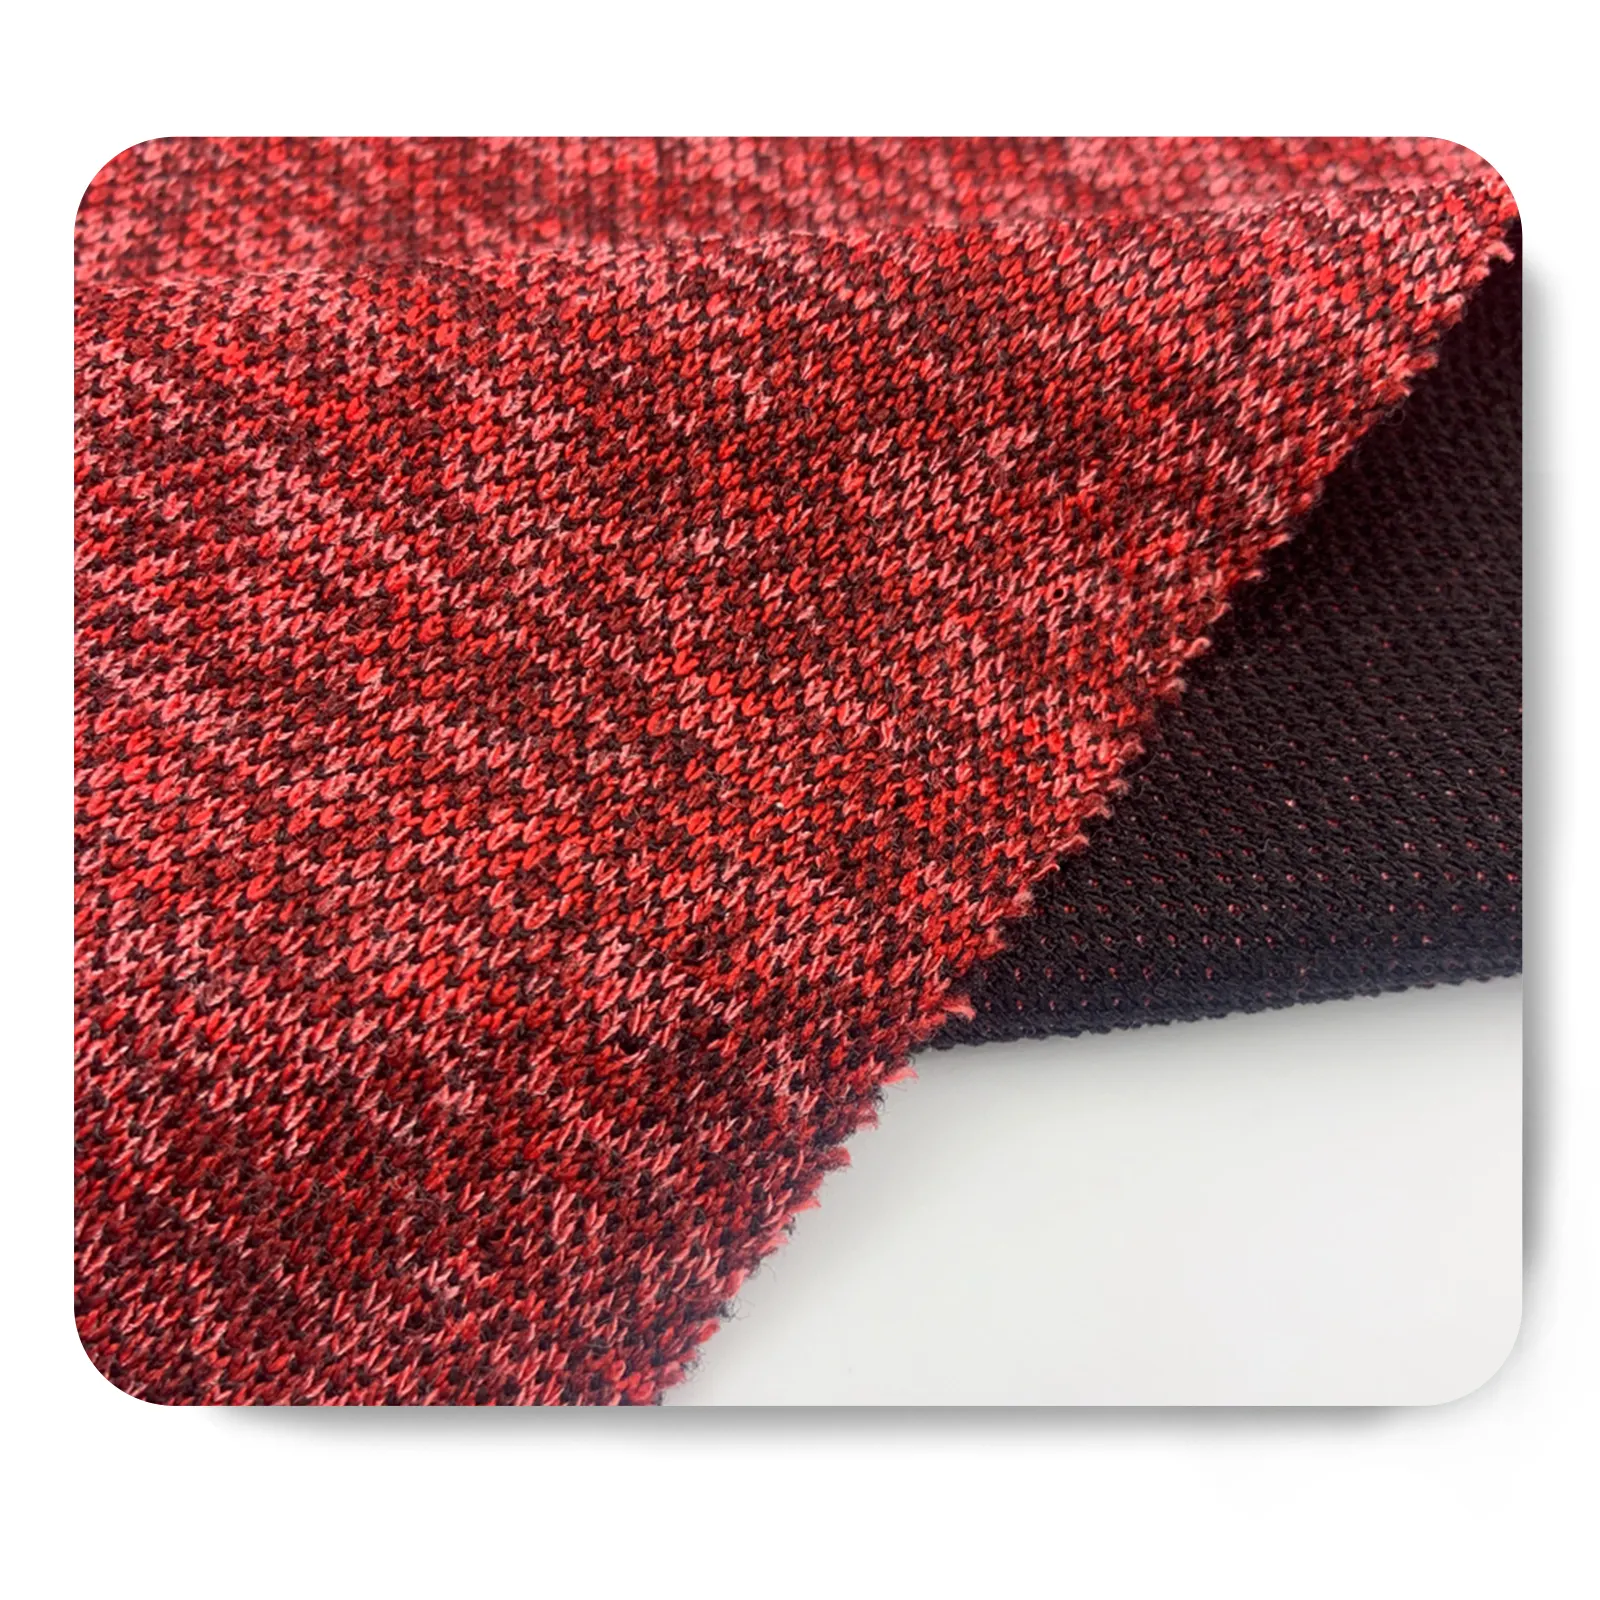 Ấn độ vải hacci Poly Rayon span Stretch tùy chỉnh đan Bicolor vải cho phụ nữ may mặc giá rẻ chất lượng